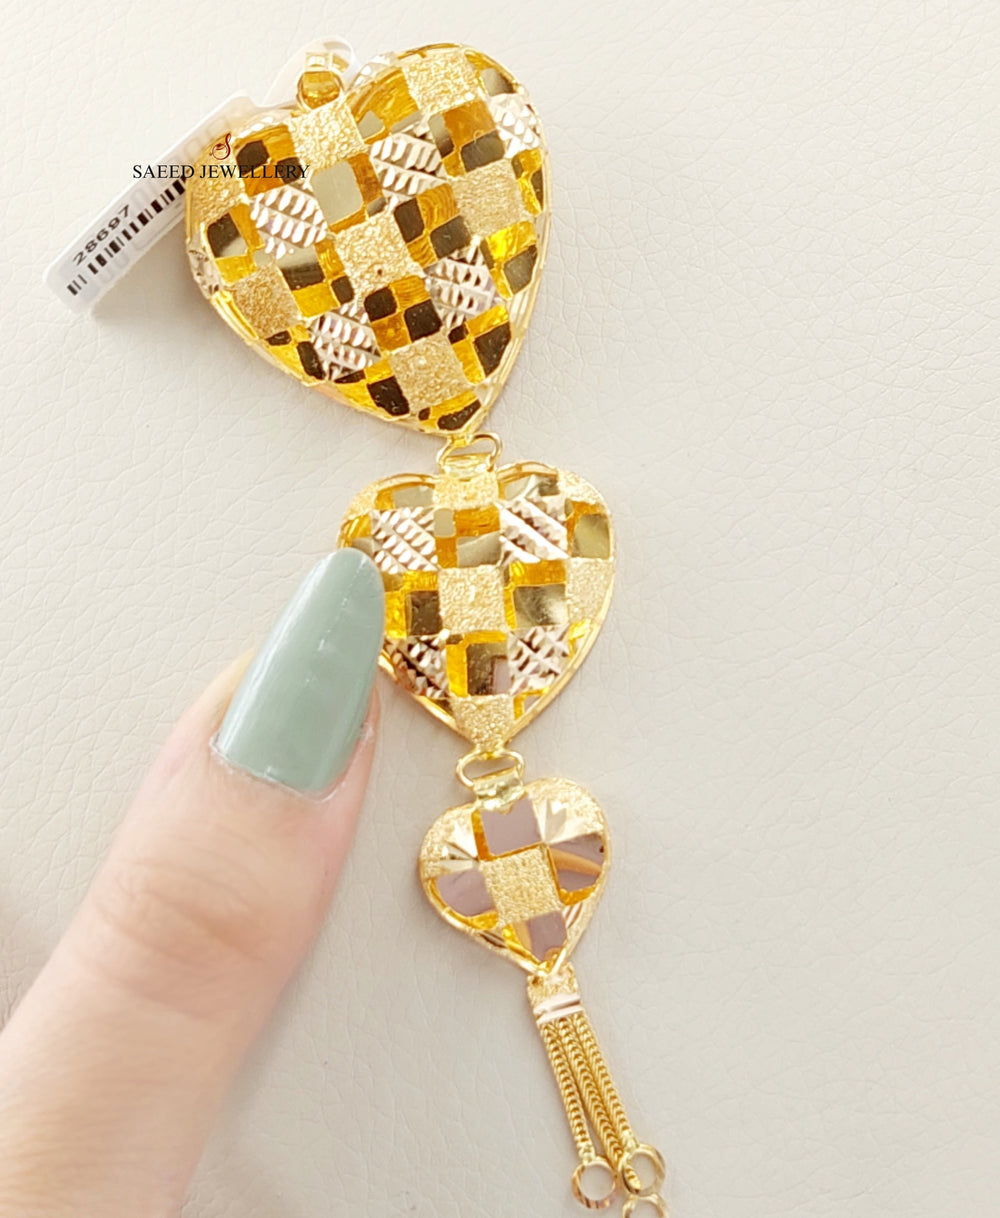 Kuwaiti Heart Pendant Made Of 21K Yellow Gold by Saeed Jewelry-28697